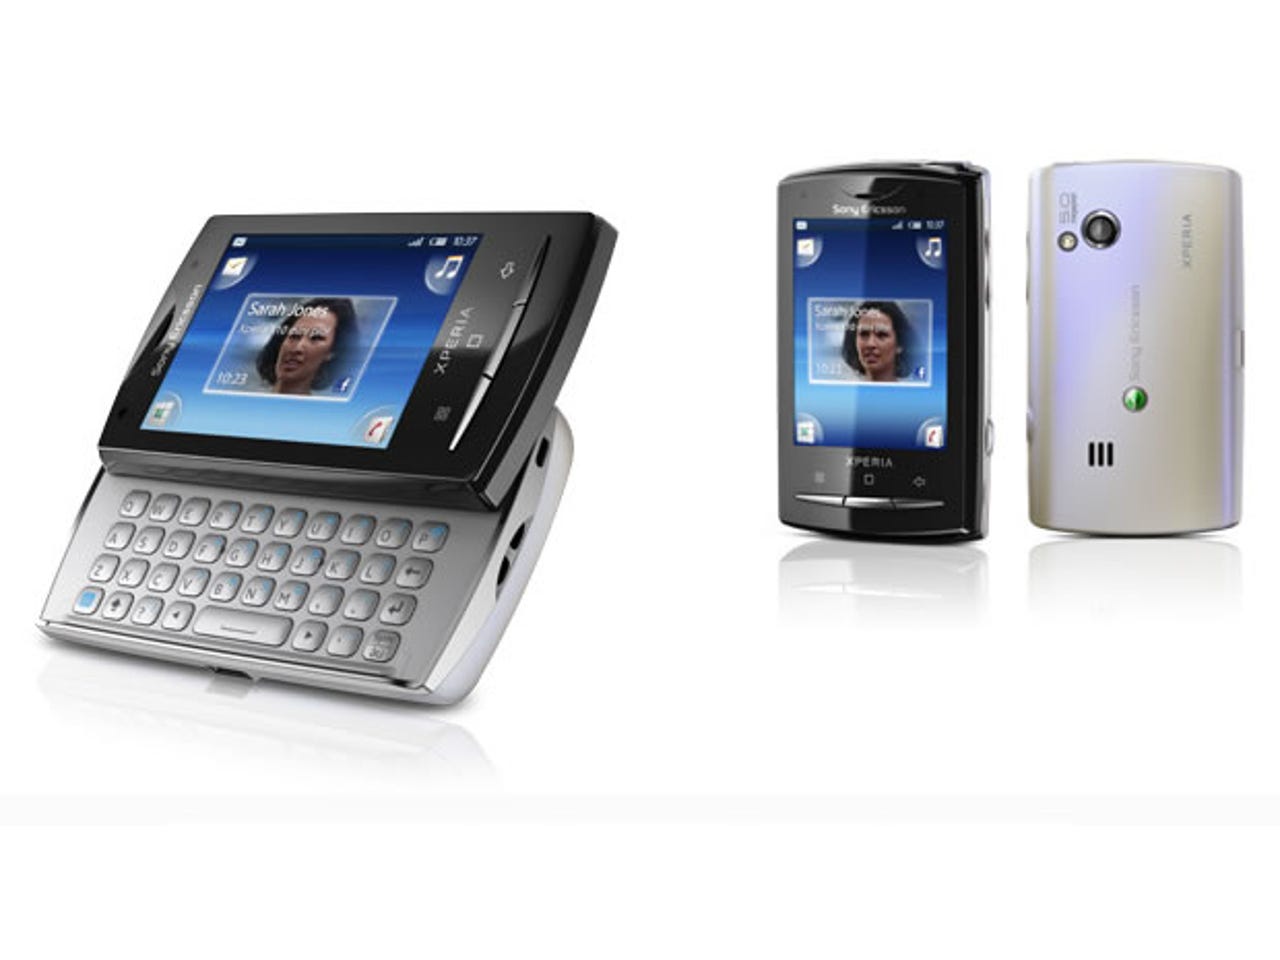 Sony Xperia x10 Mini. Sony Xperia x10 Mini Pro. Sony Ericsson x10 Mini. Sony Ericsson Xperia x10 Mini.